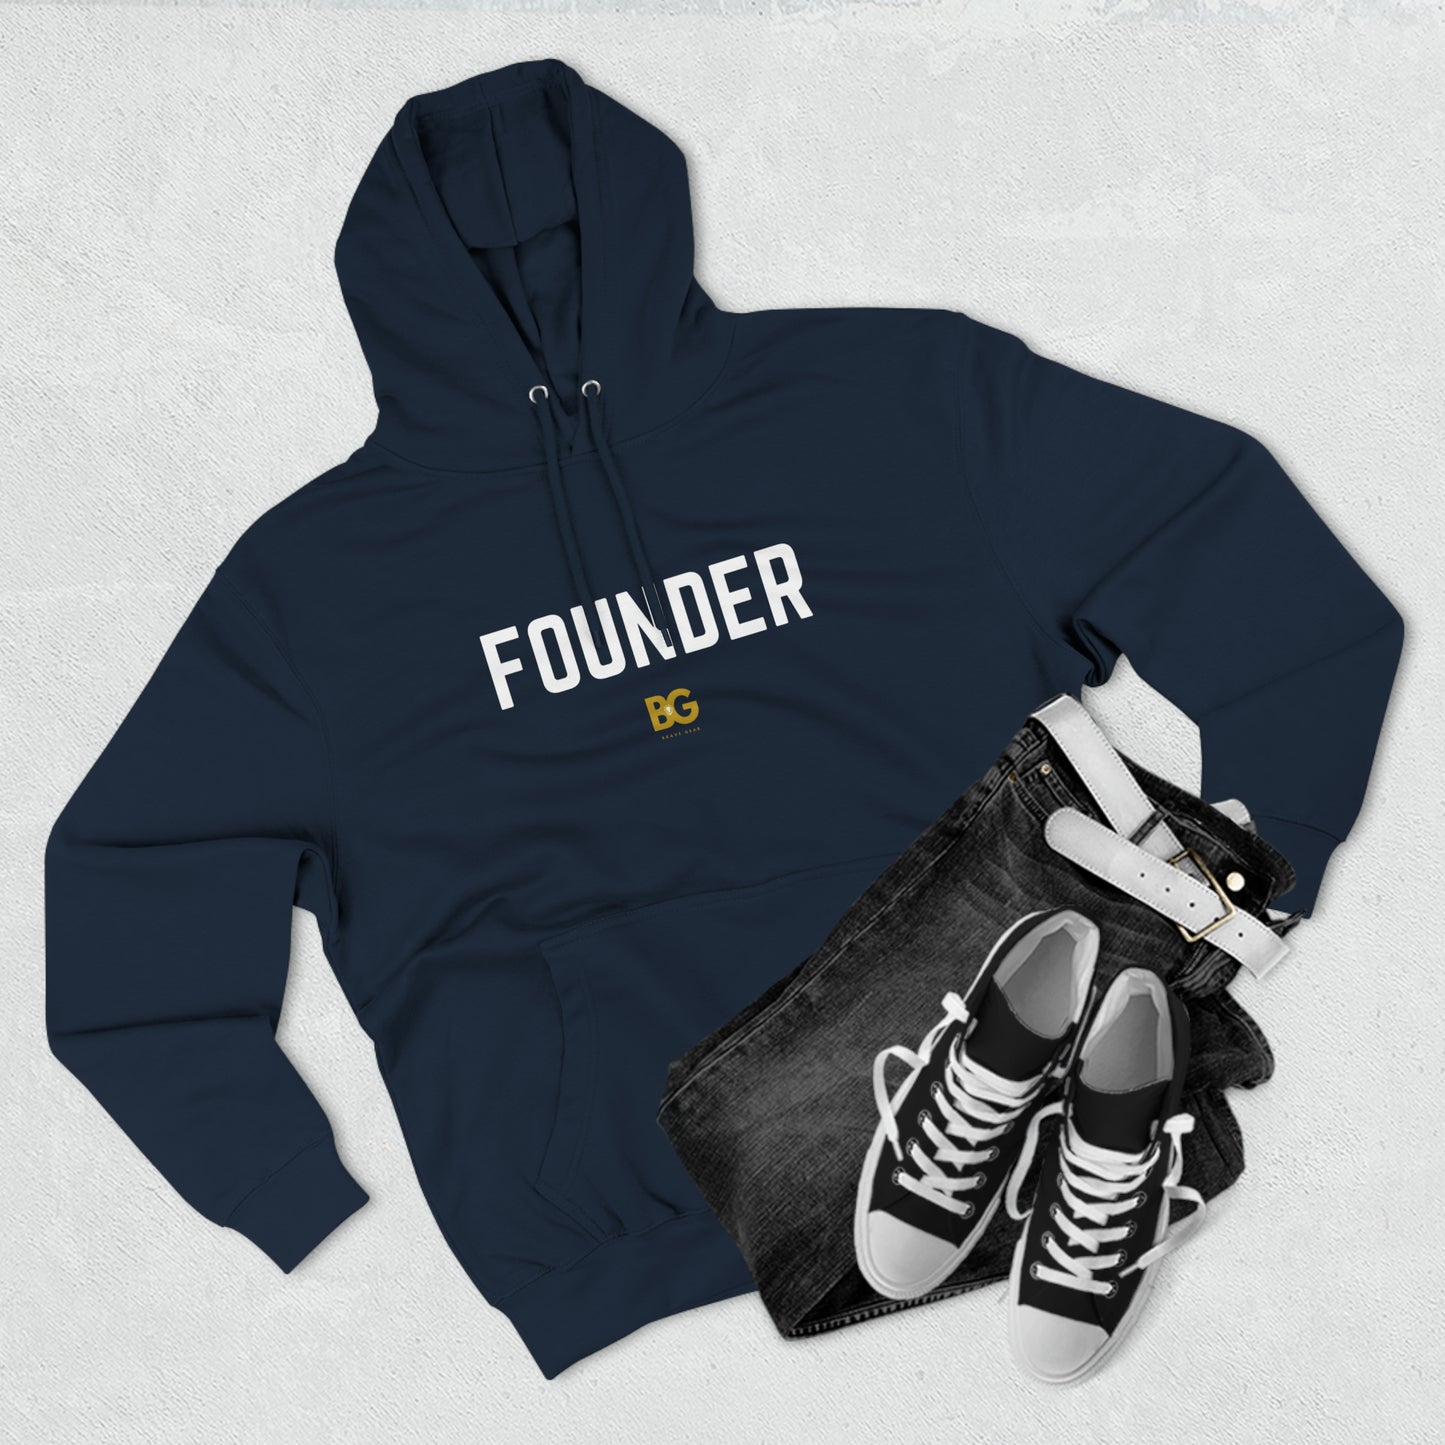 BG "Founder" Premium Pullover Hoodie